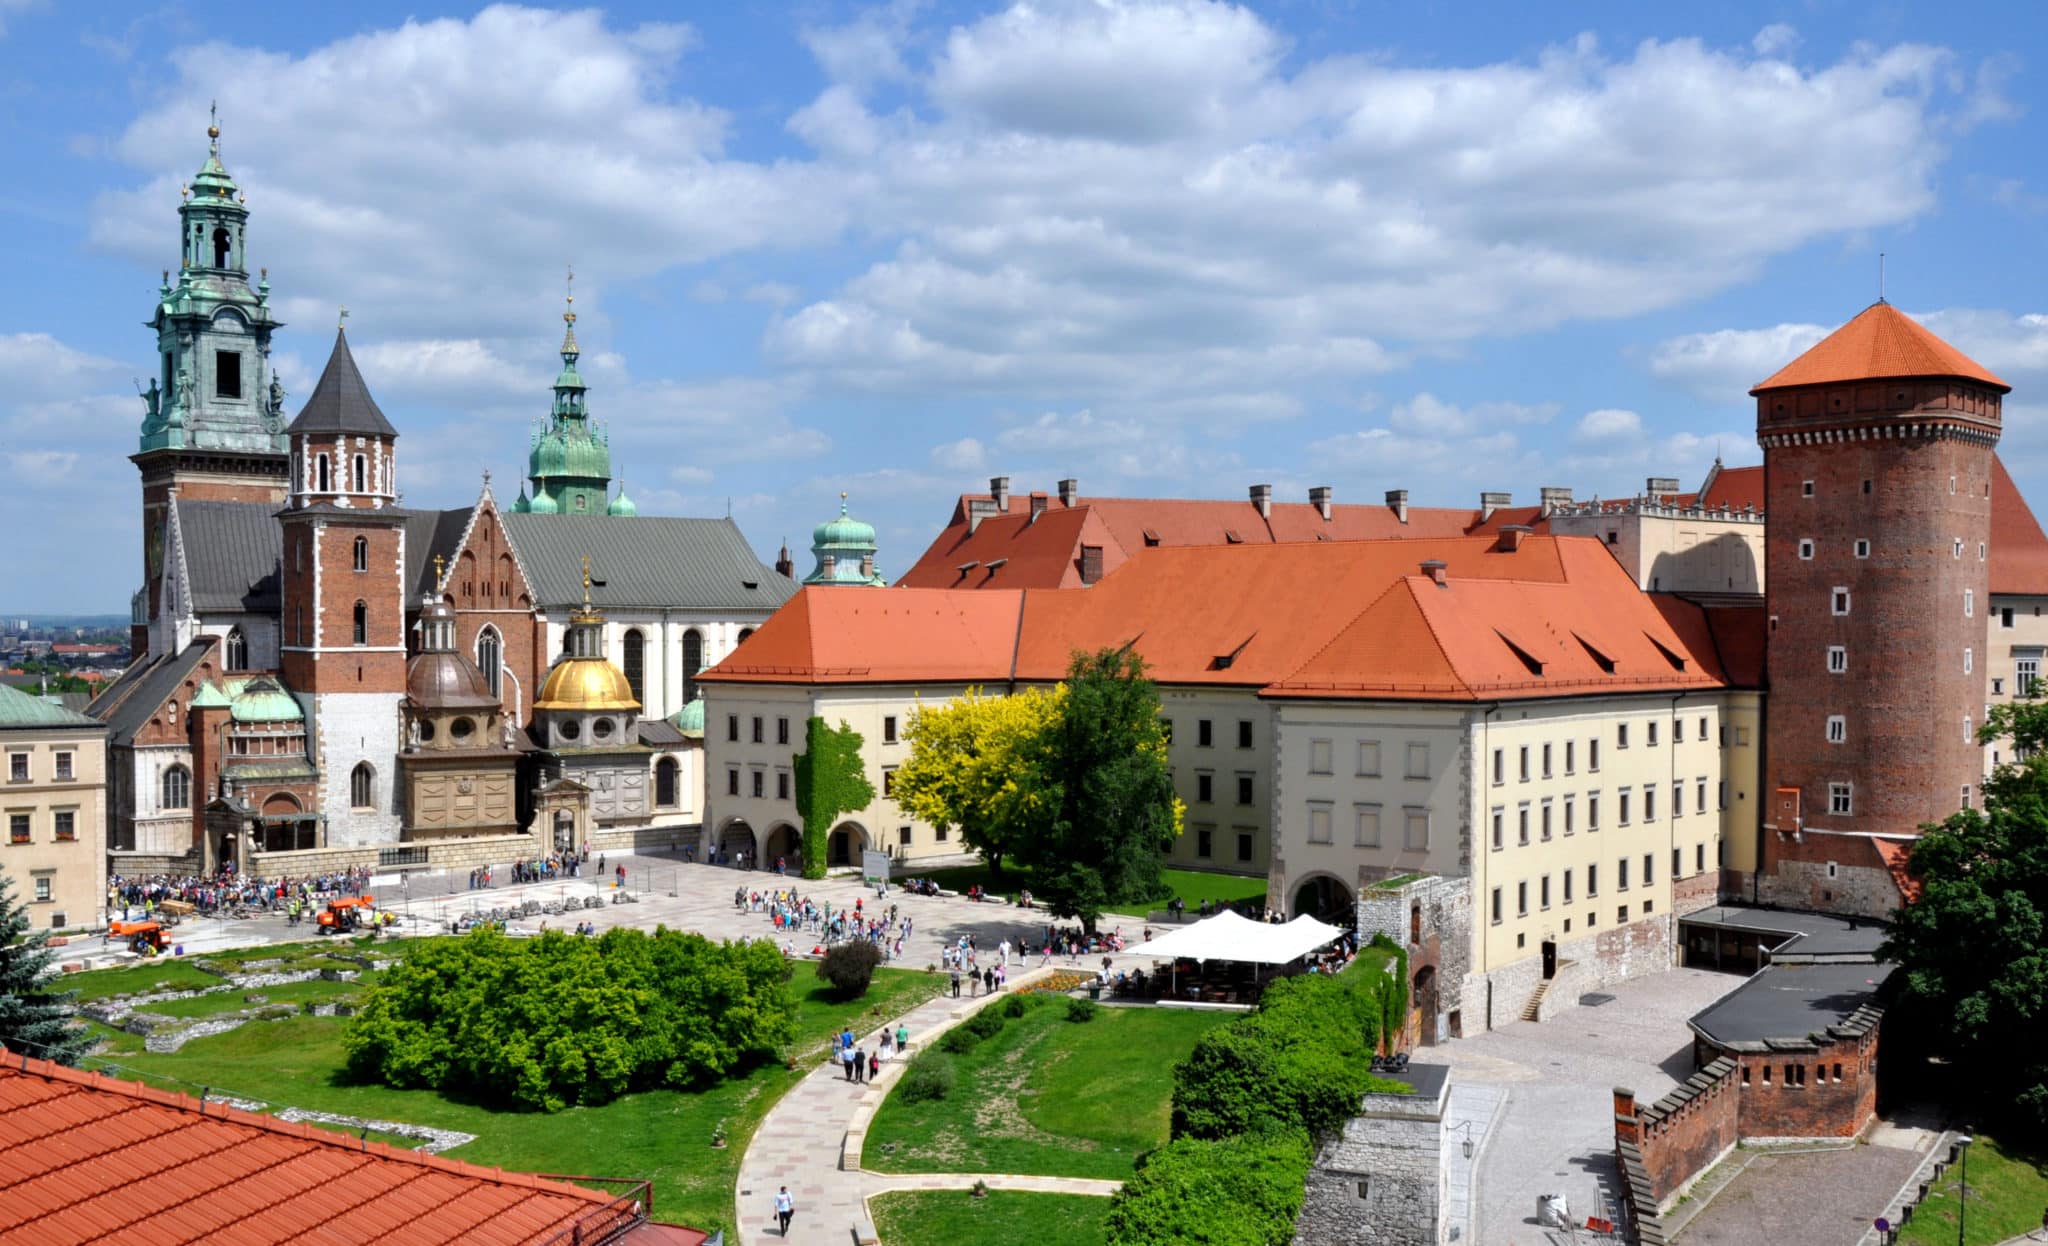 https://krakow.wiki/wp-content/uploads/2016/10/Wawel_castle.jpg